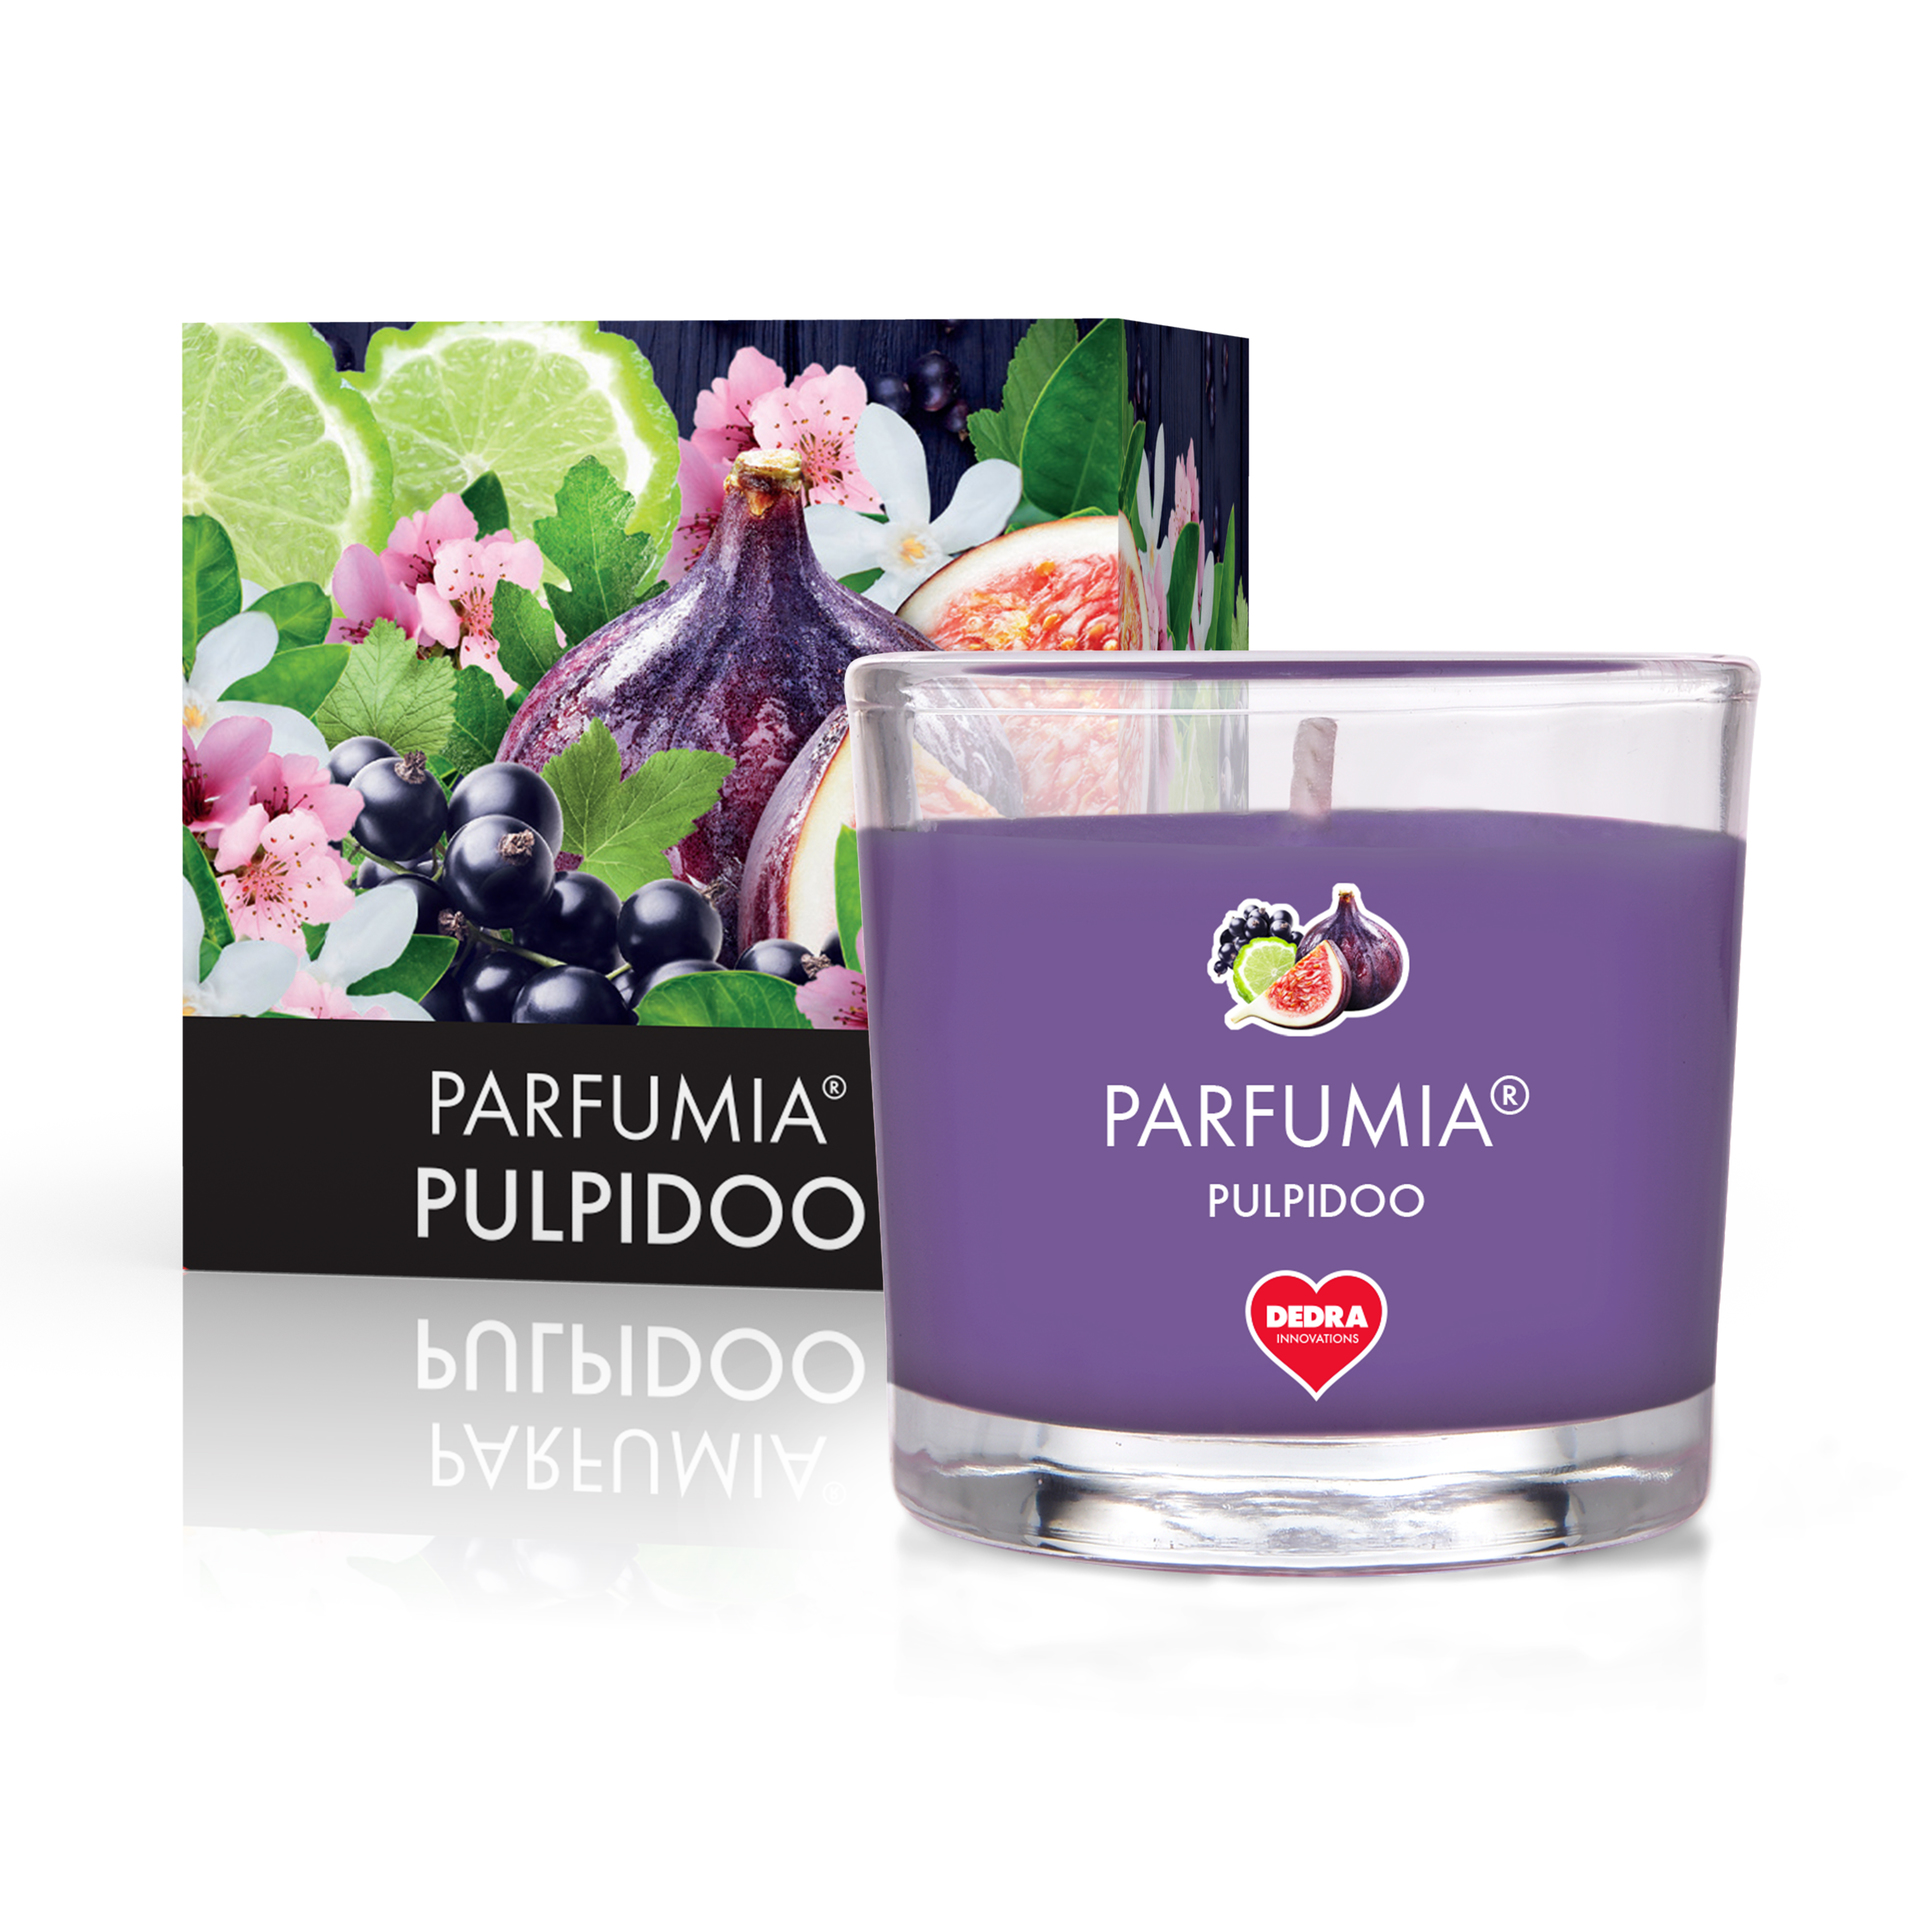 55 ml votivní sójová eko-svíce, ovocný koktejl Pulpidoo, Parfumia